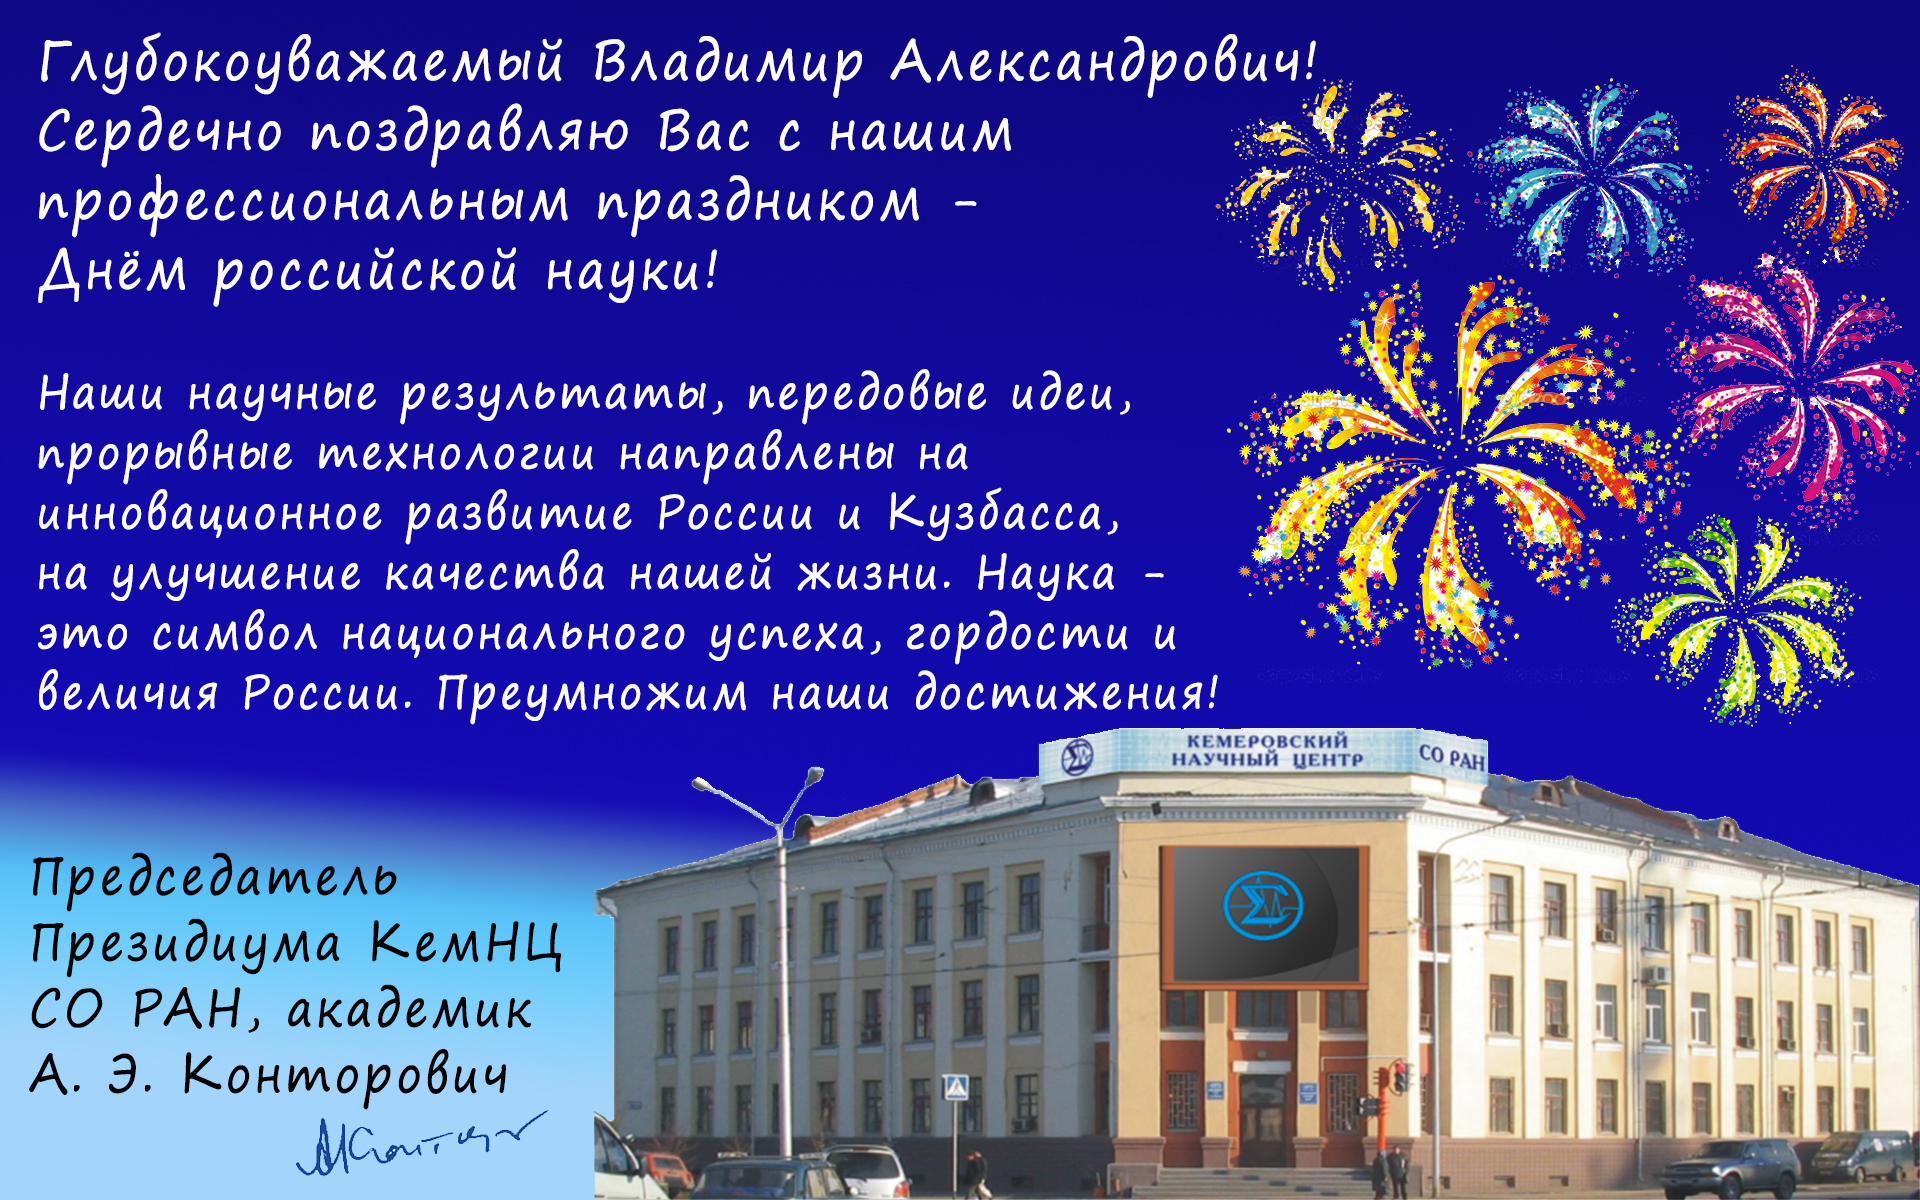 В День российской науки: красивые поздравления с праздником